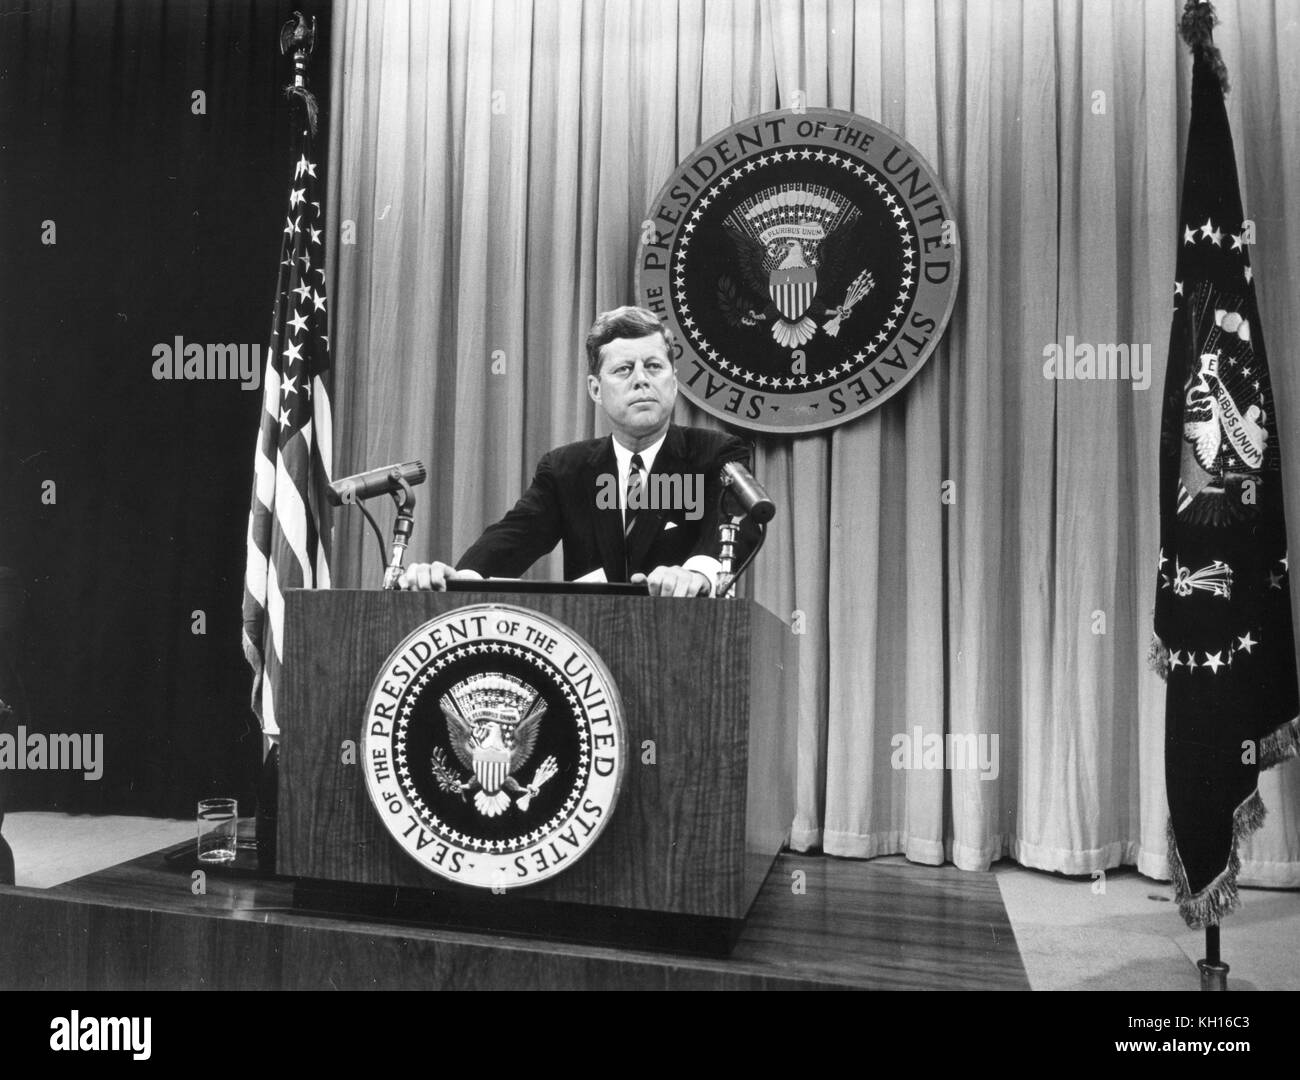 Foto del Presidente John F Kennedy parlando alla conferenza stampa in cui ha discusso la crisi di talidomide e problemi tecnici con il trattato sul divieto totale di sperimentazione nucleare, Washington DC, 8/01/1962. Foto di Abbie Rowe Foto Stock